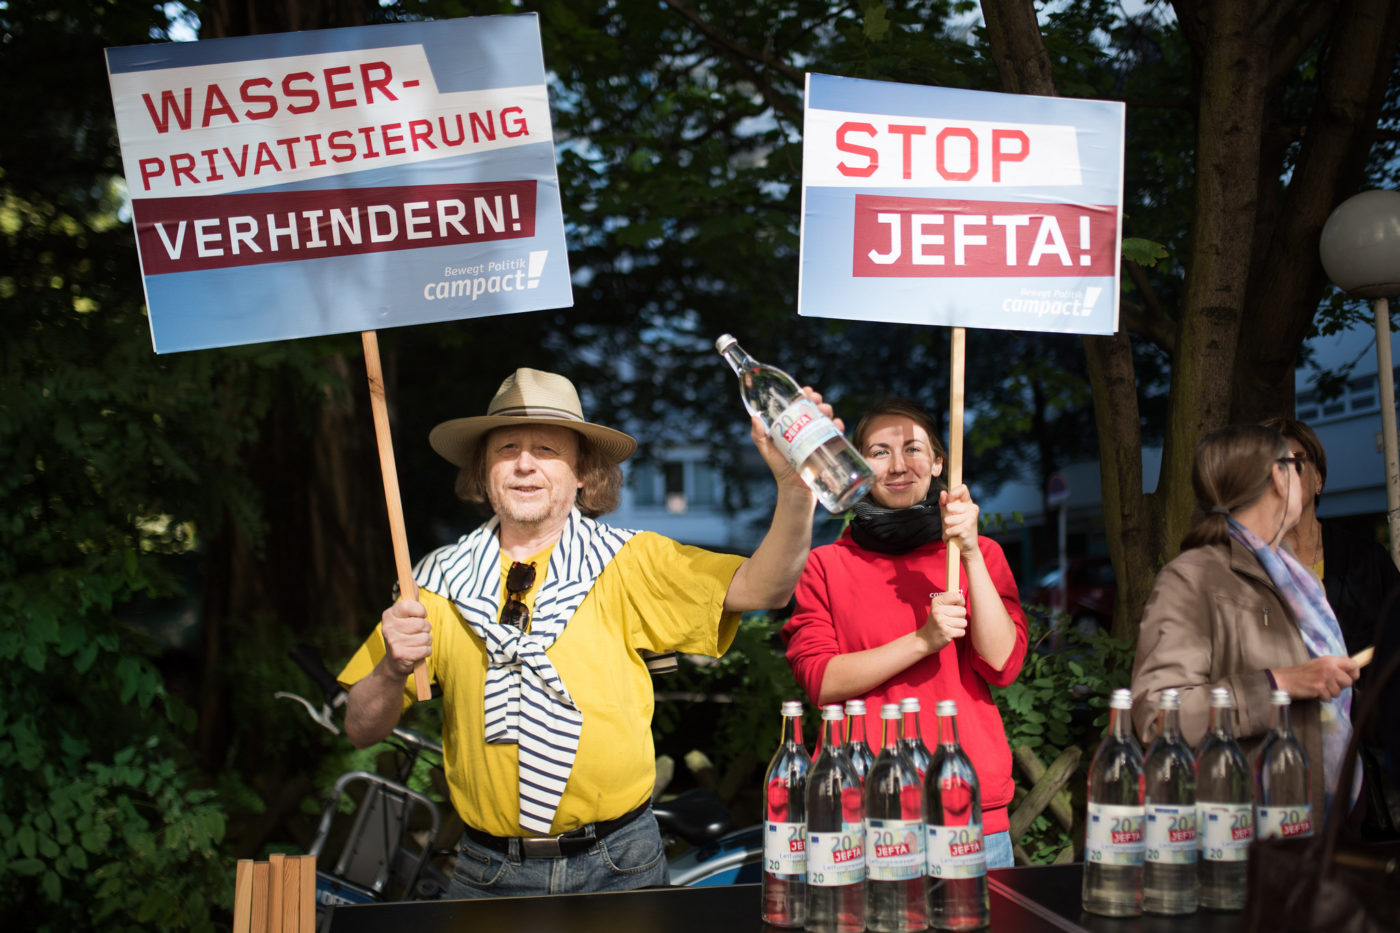 Menschen demonstrieren gegen Jefta und Wasserprivatisierung